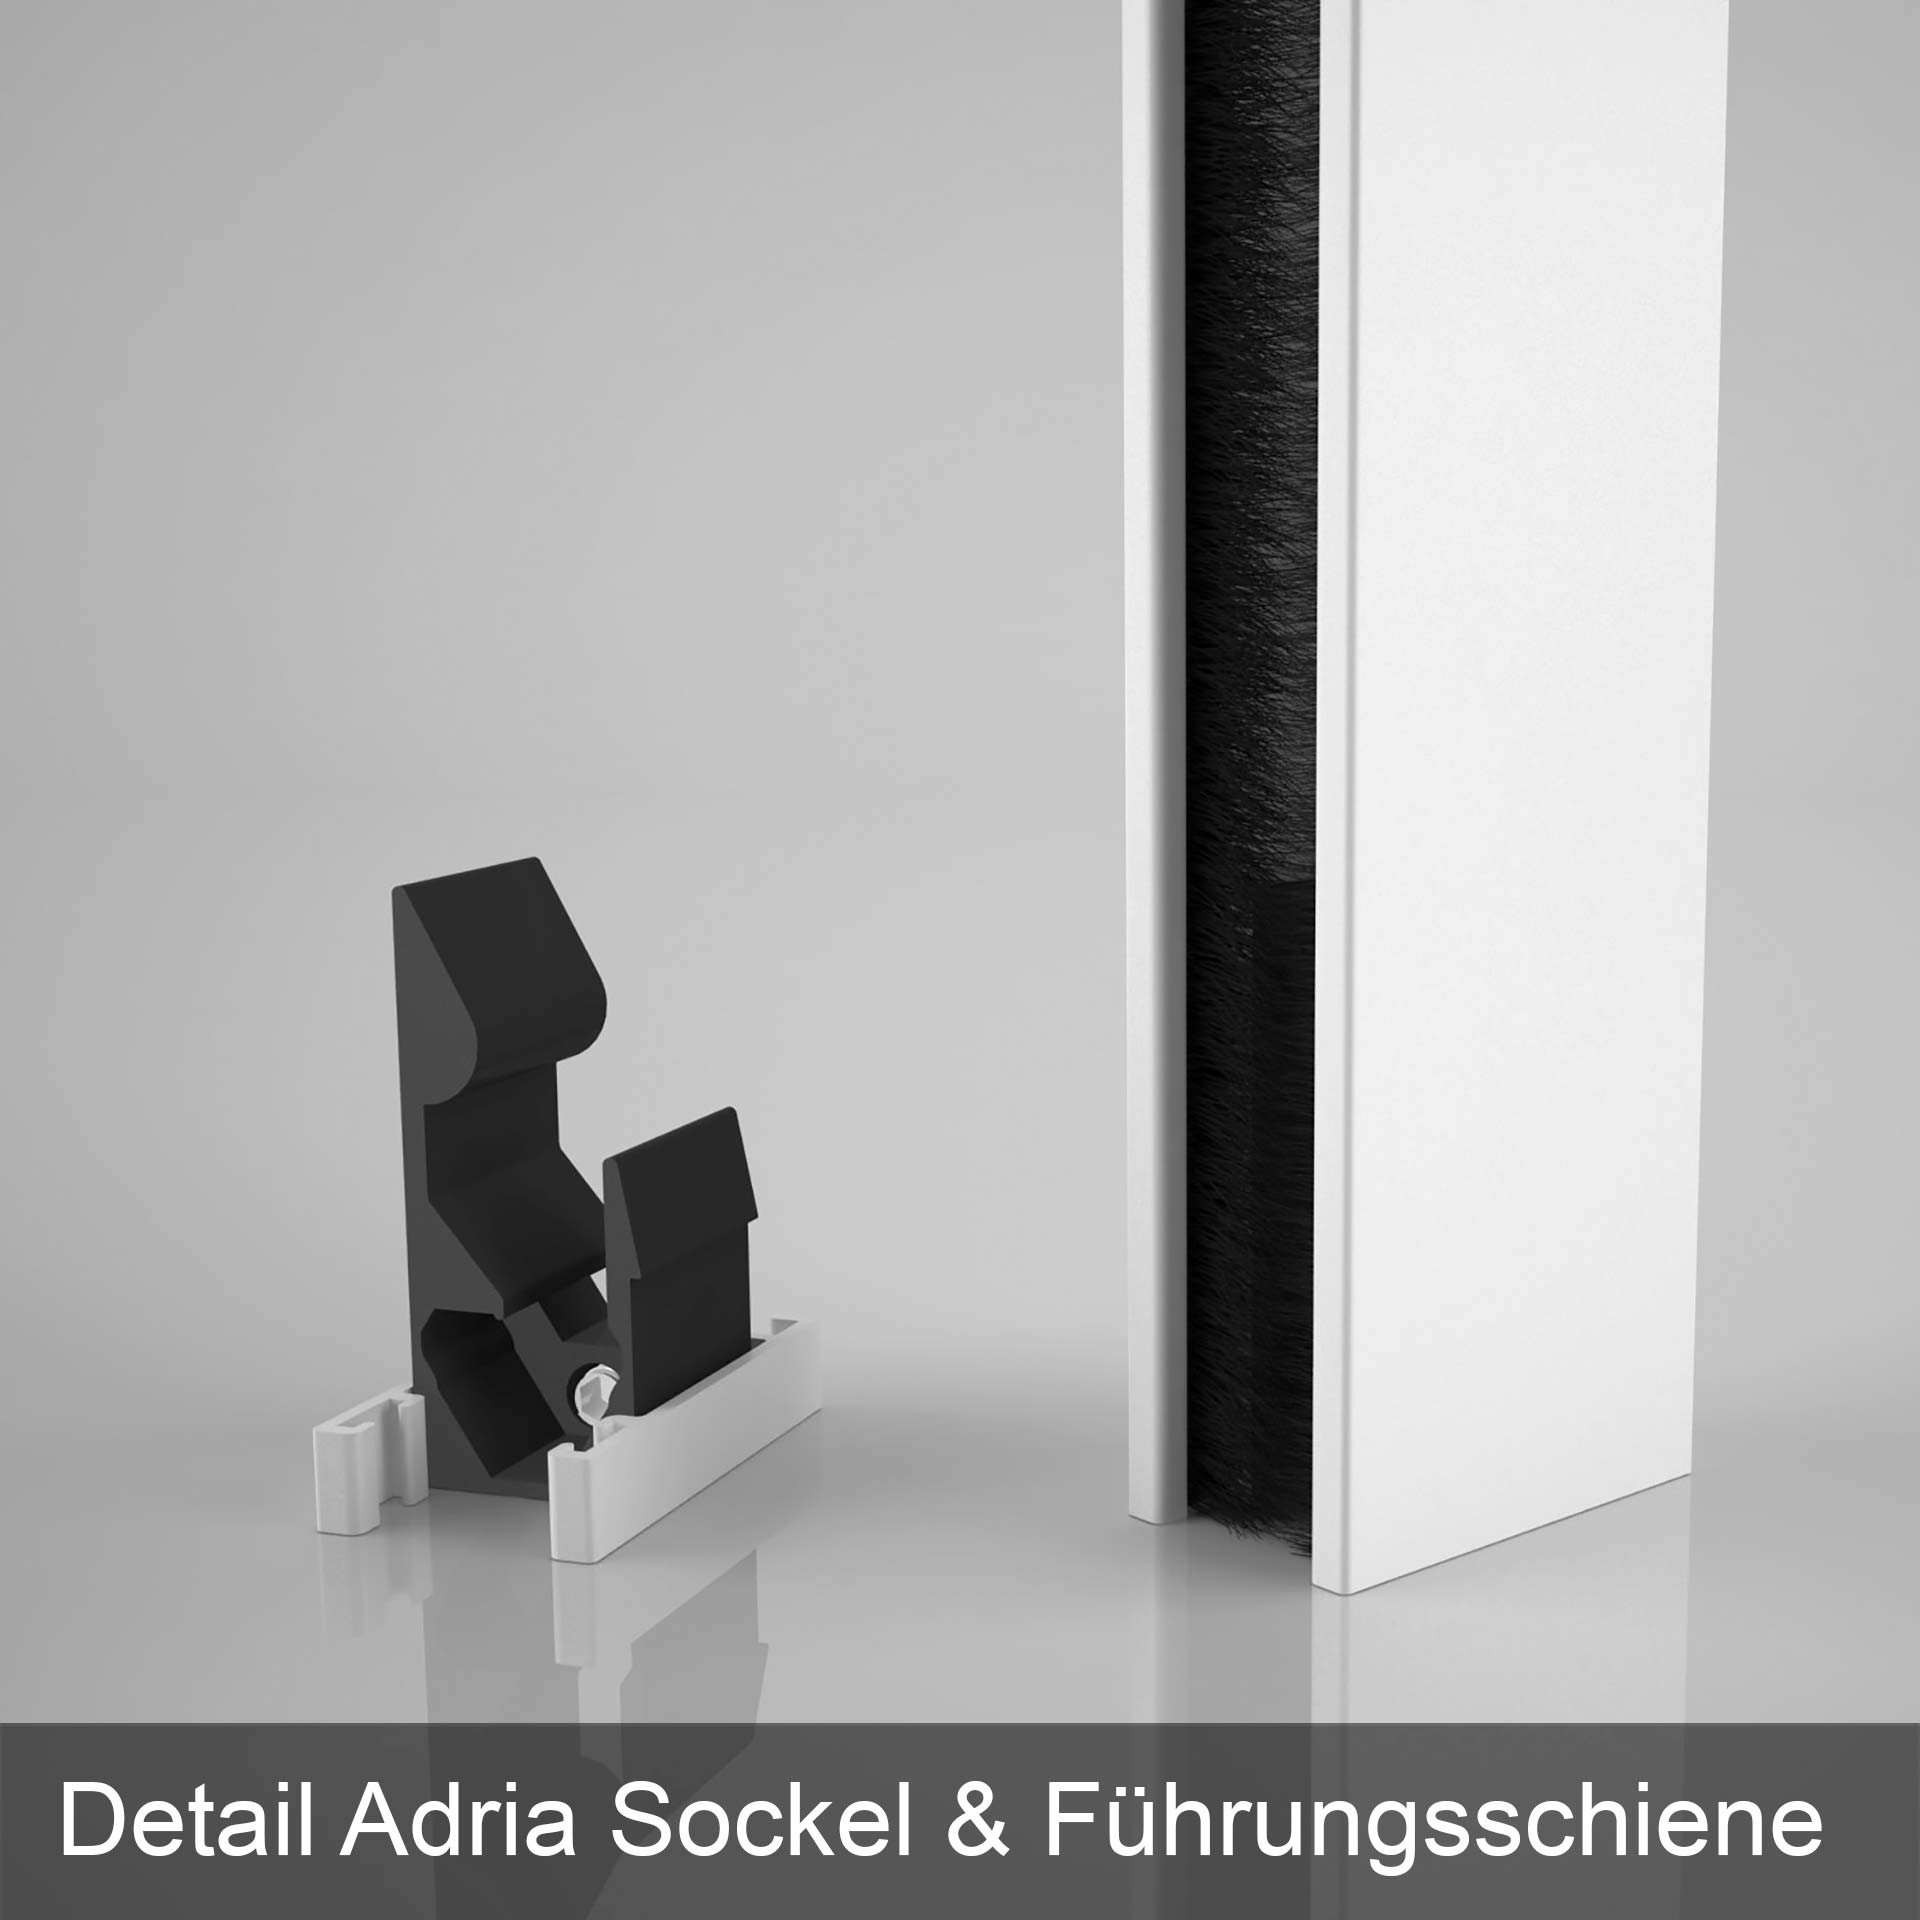 Rolhor voor ramen | cassette kan eenvoudig op het kozijn geschroefd worden of worden tussen geklemd | Adria